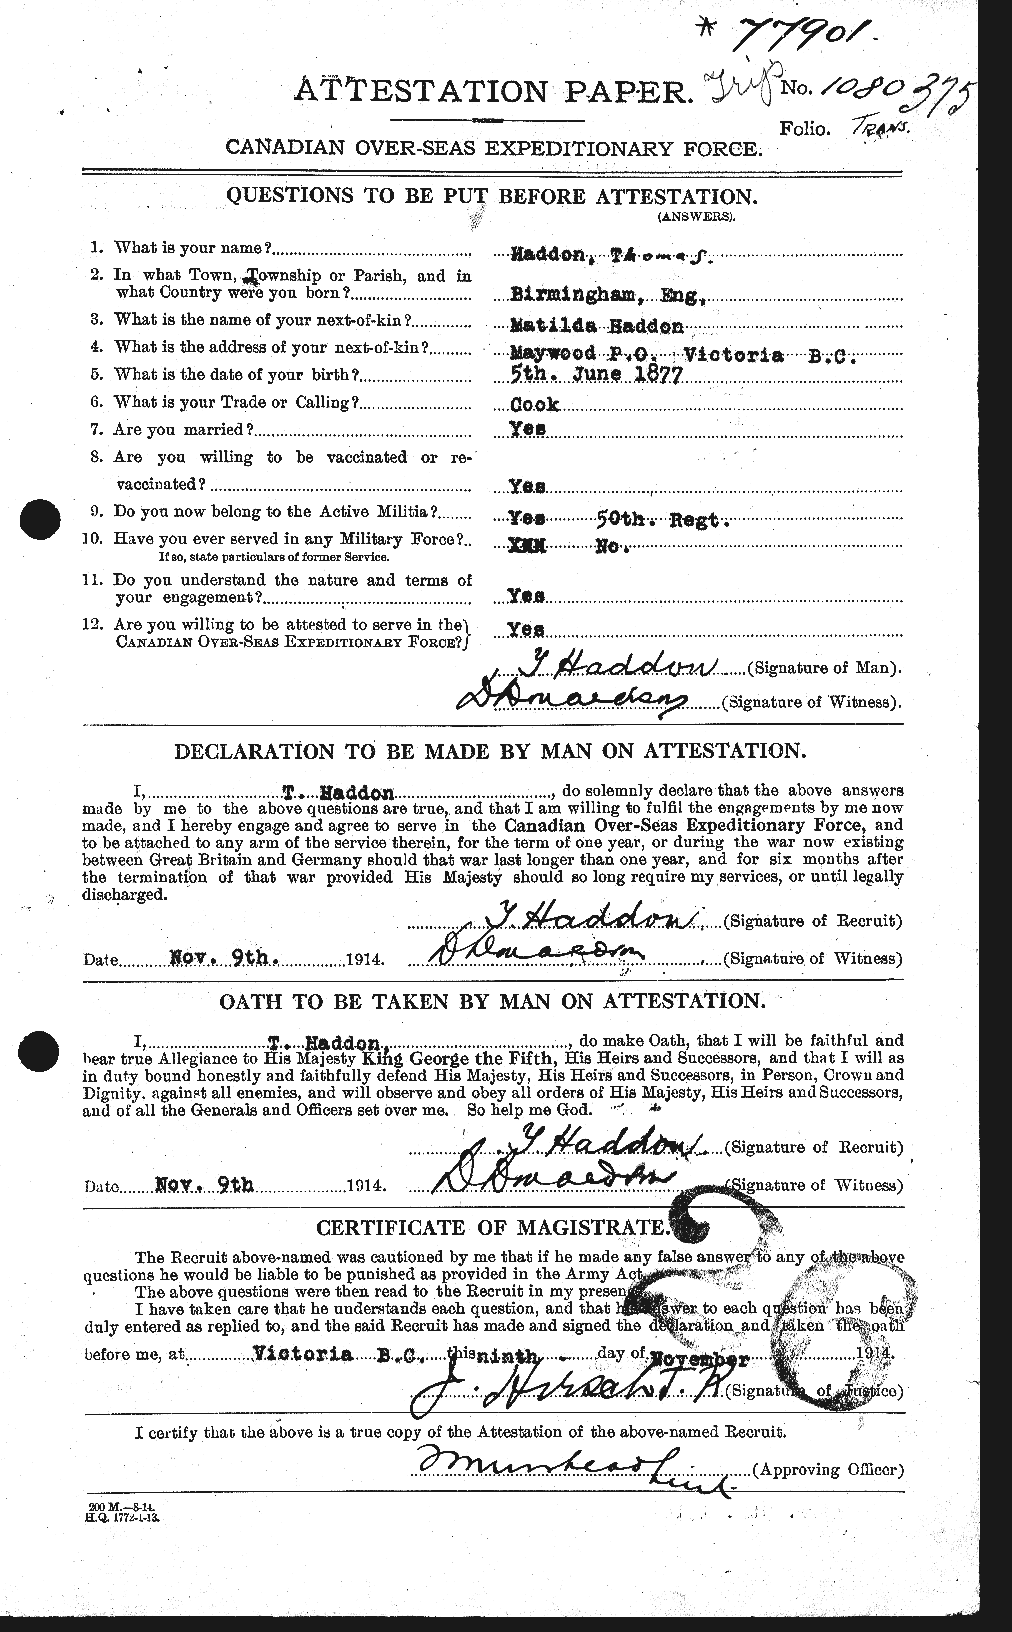 Dossiers du Personnel de la Première Guerre mondiale - CEC 368767a